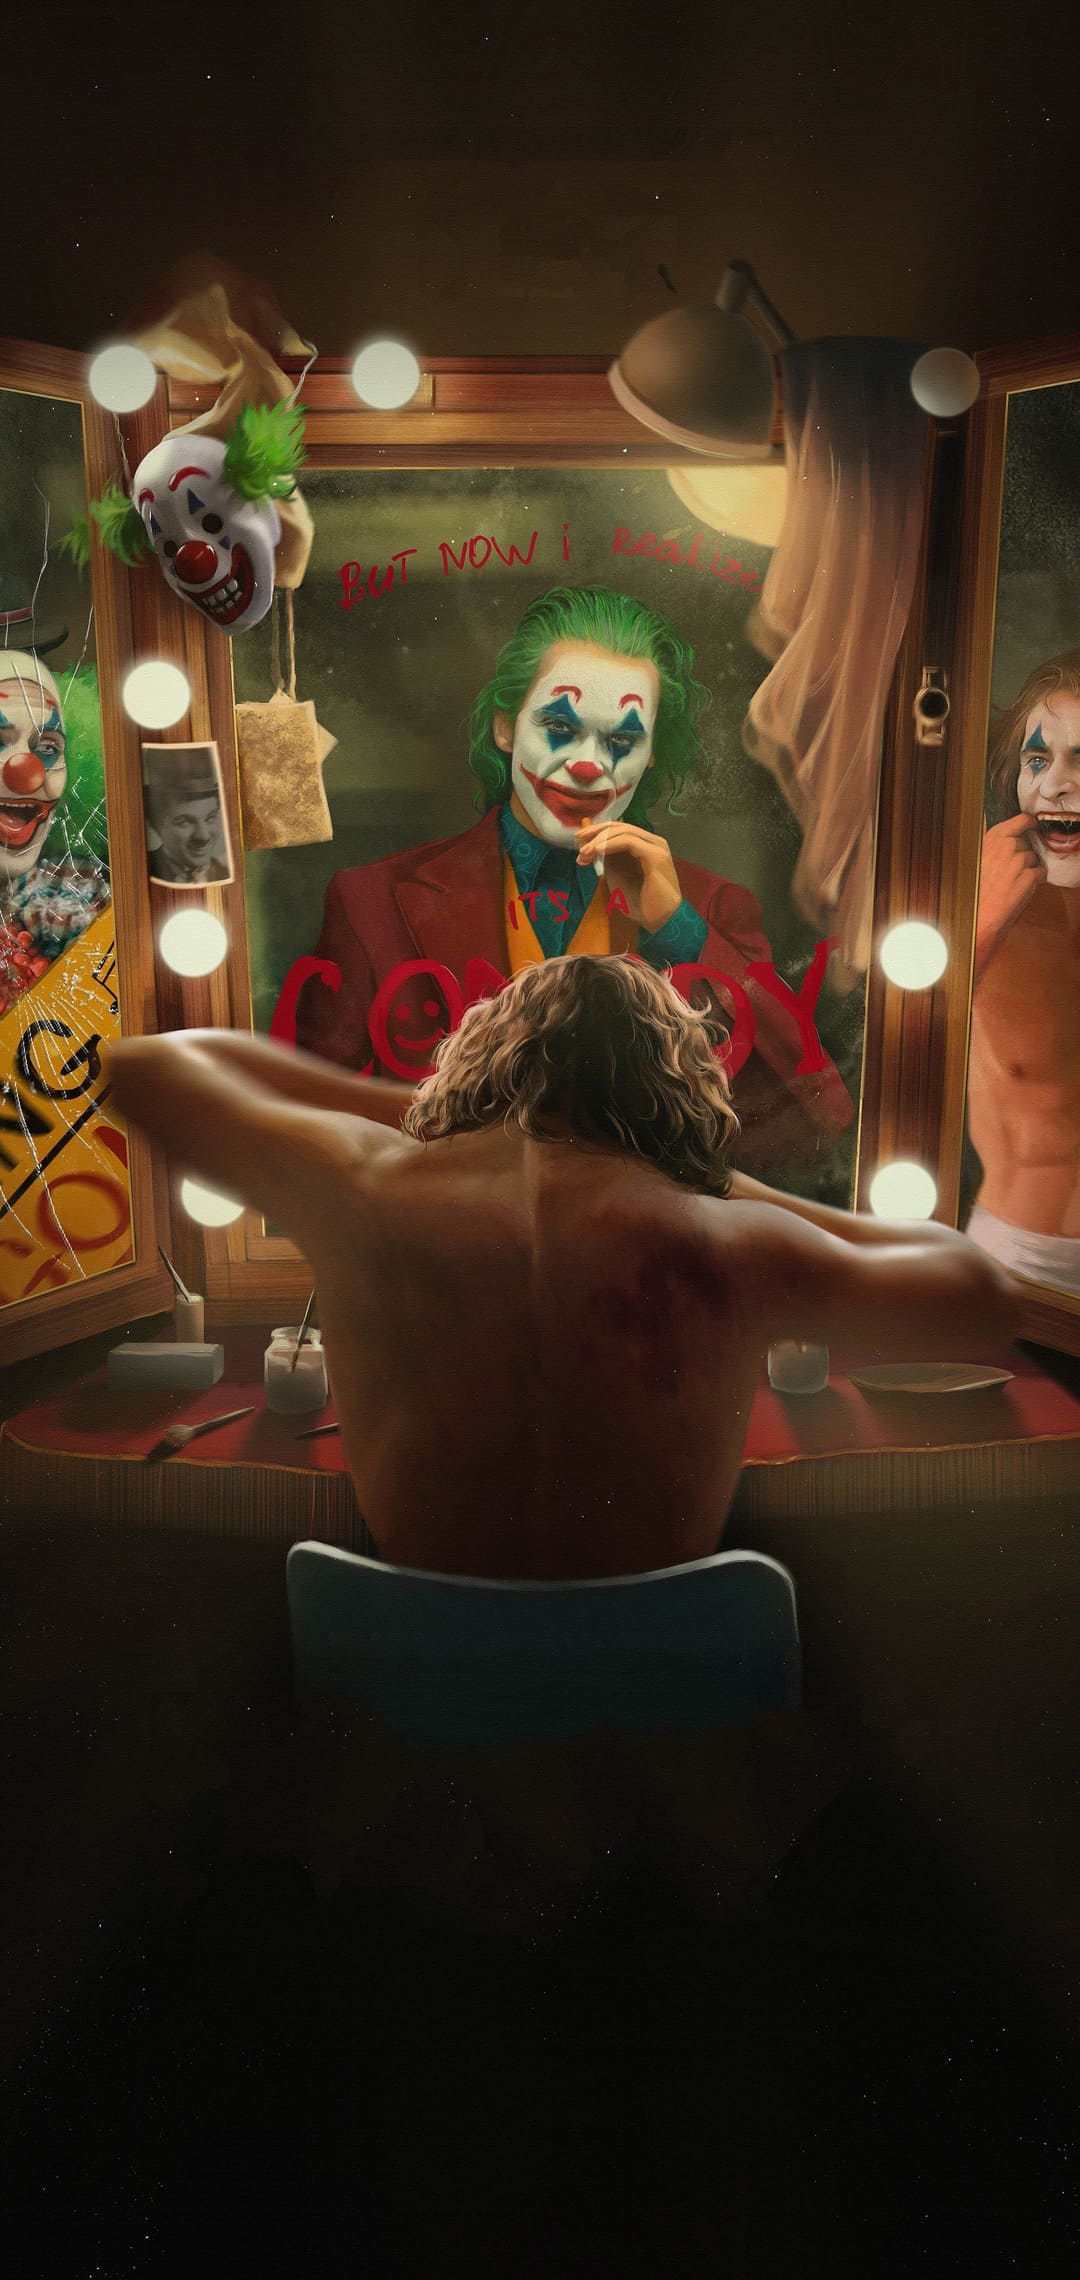  Joker Hintergrundbild 1080x2280. Cool Joker Wallpaper Best Cool Joker Background